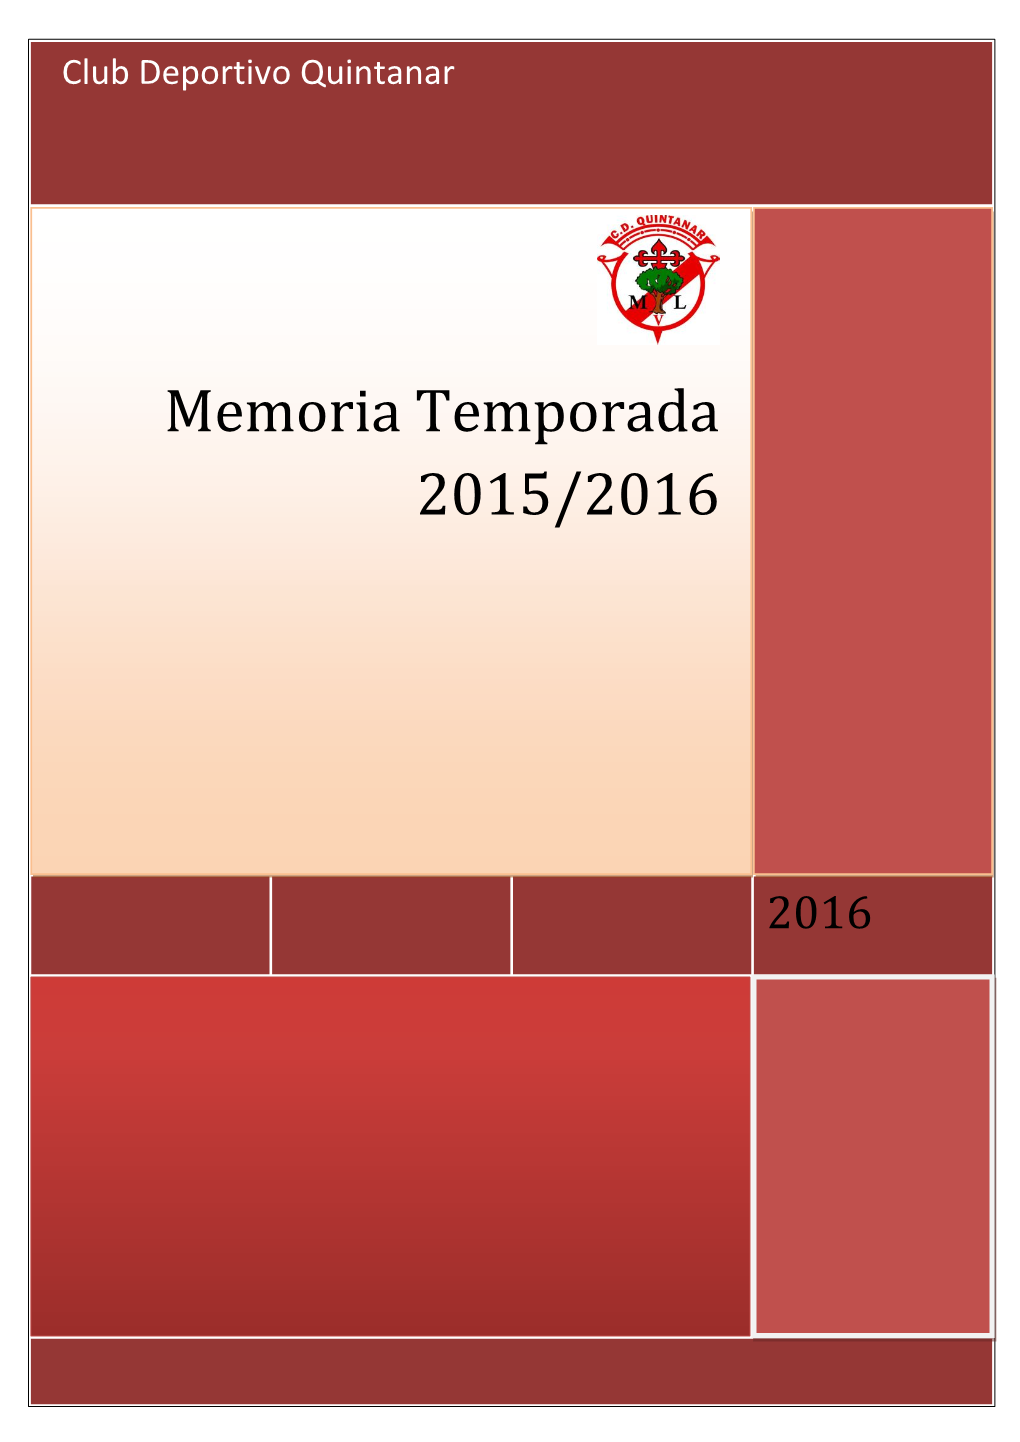 Memoria Temporada 2015/2016